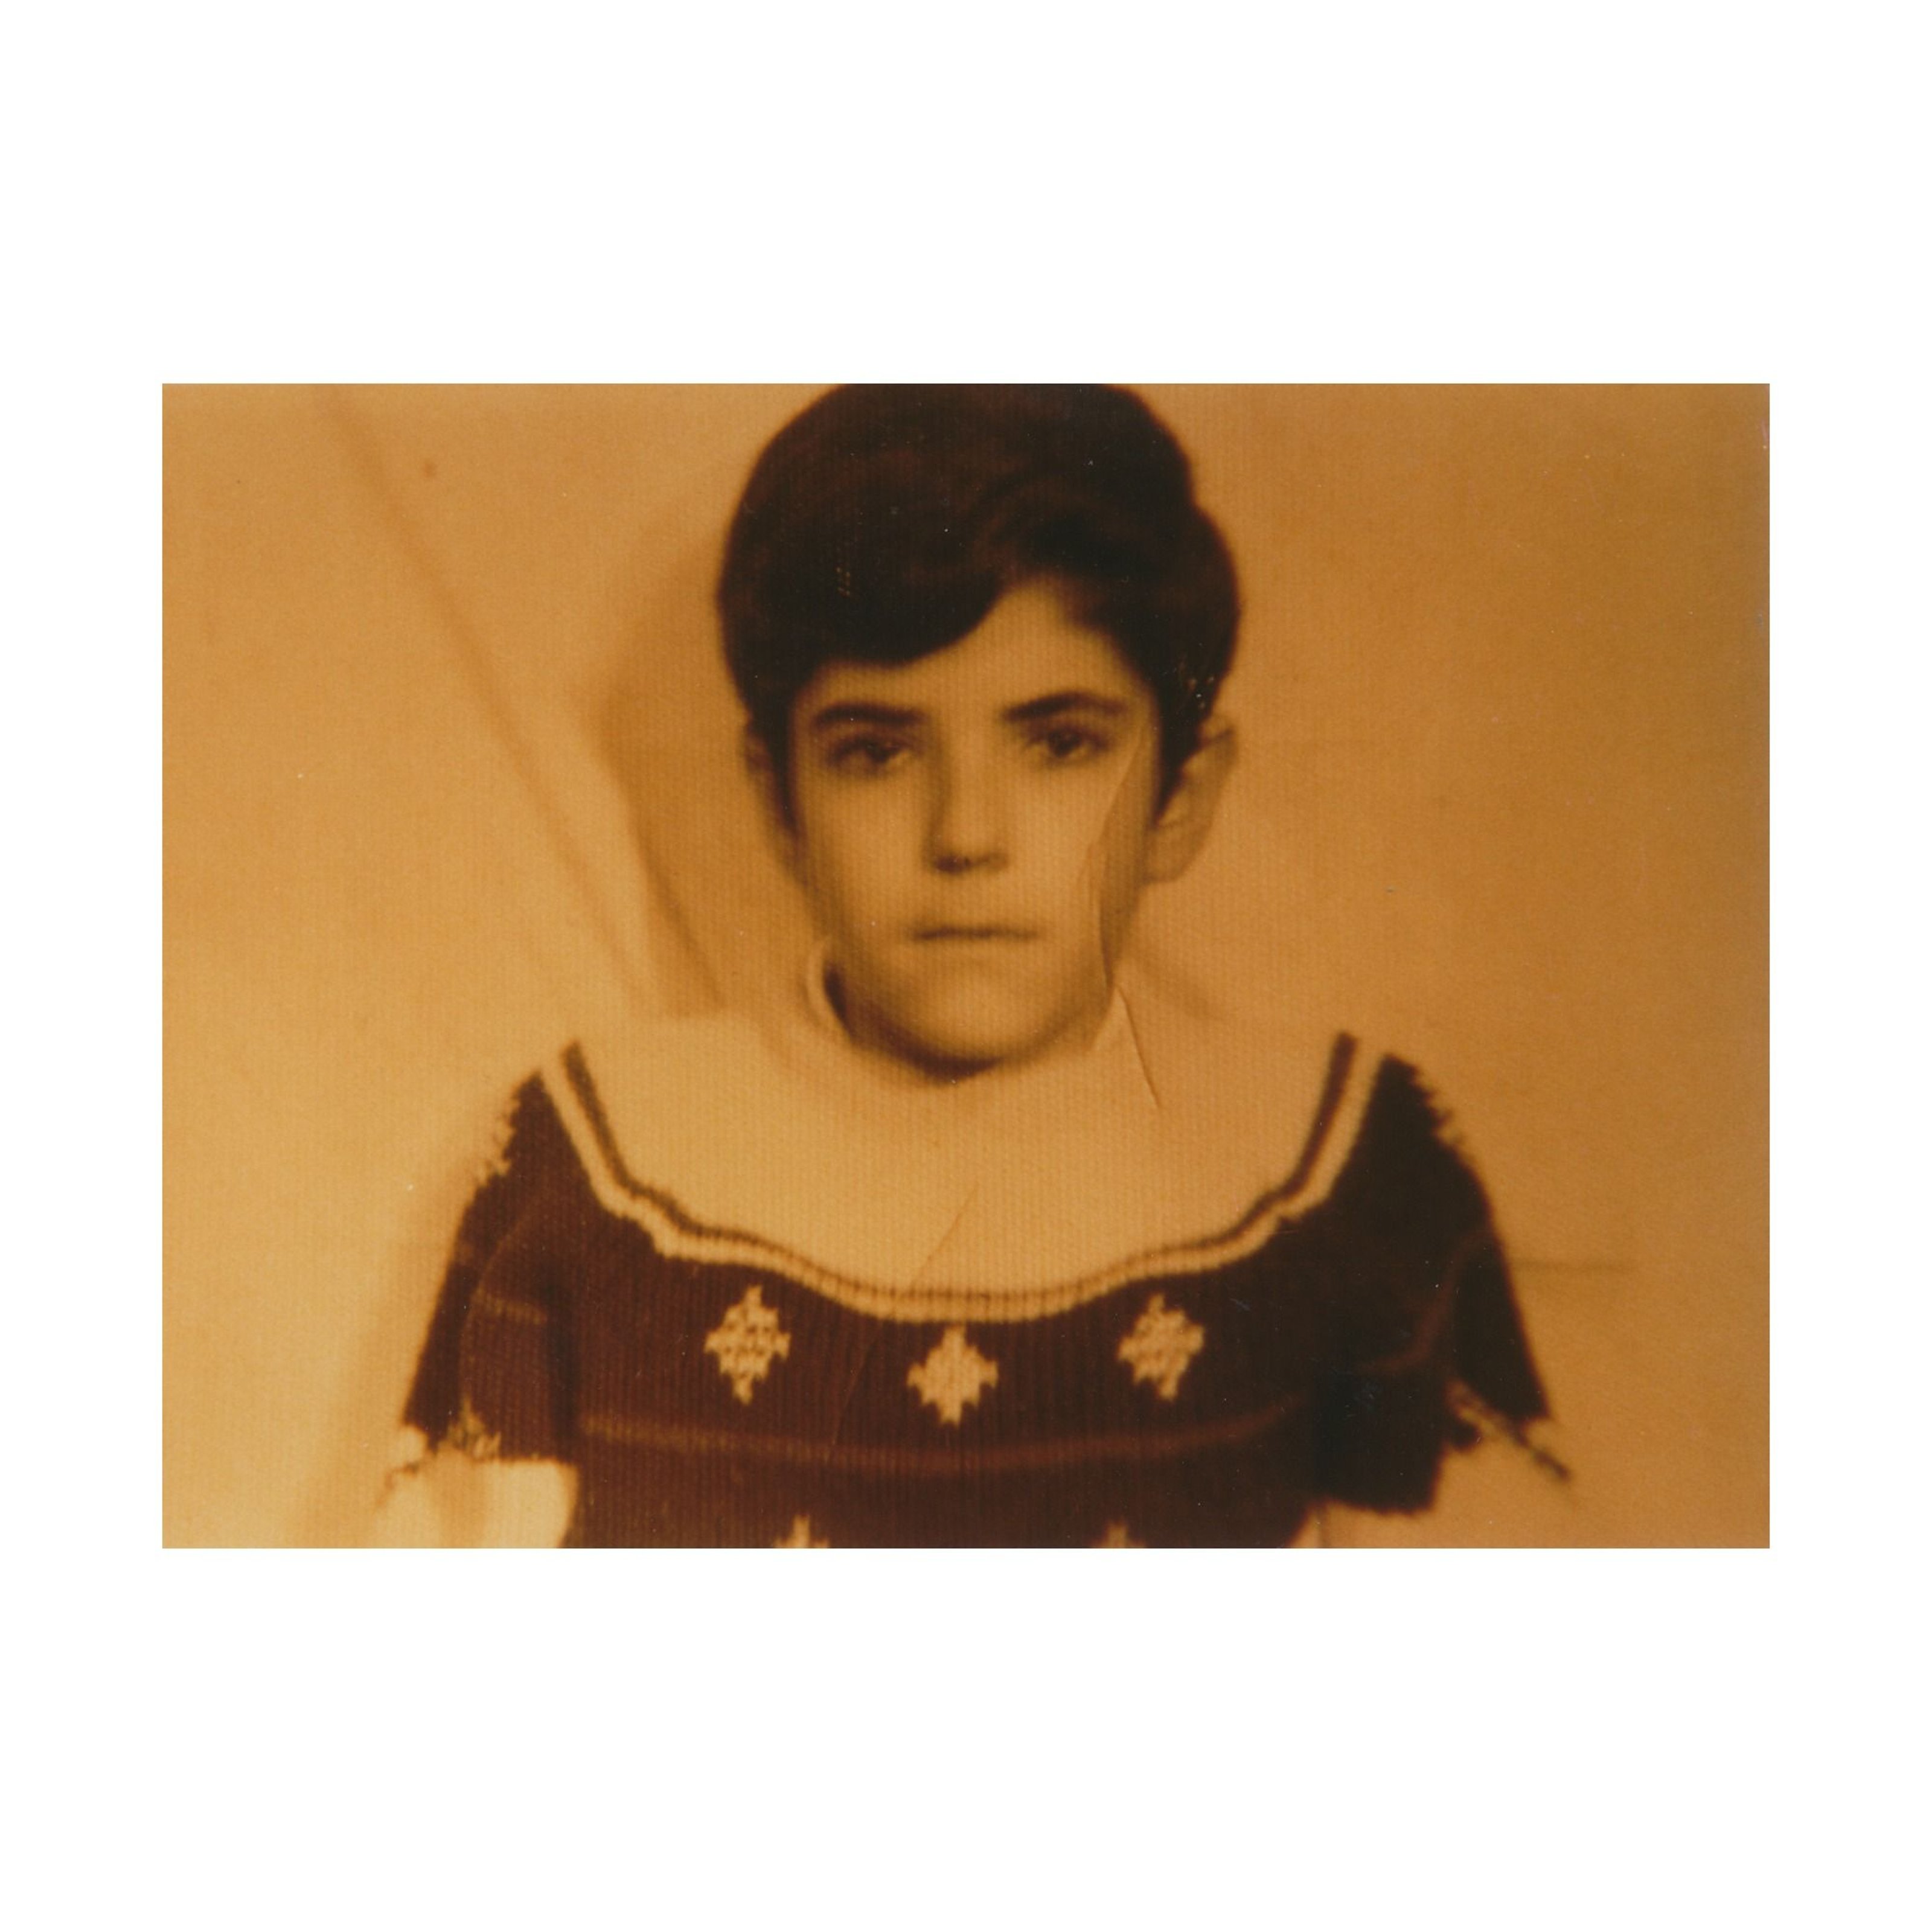 Portrait photo of Felix Gonzalez-Torres as a child.